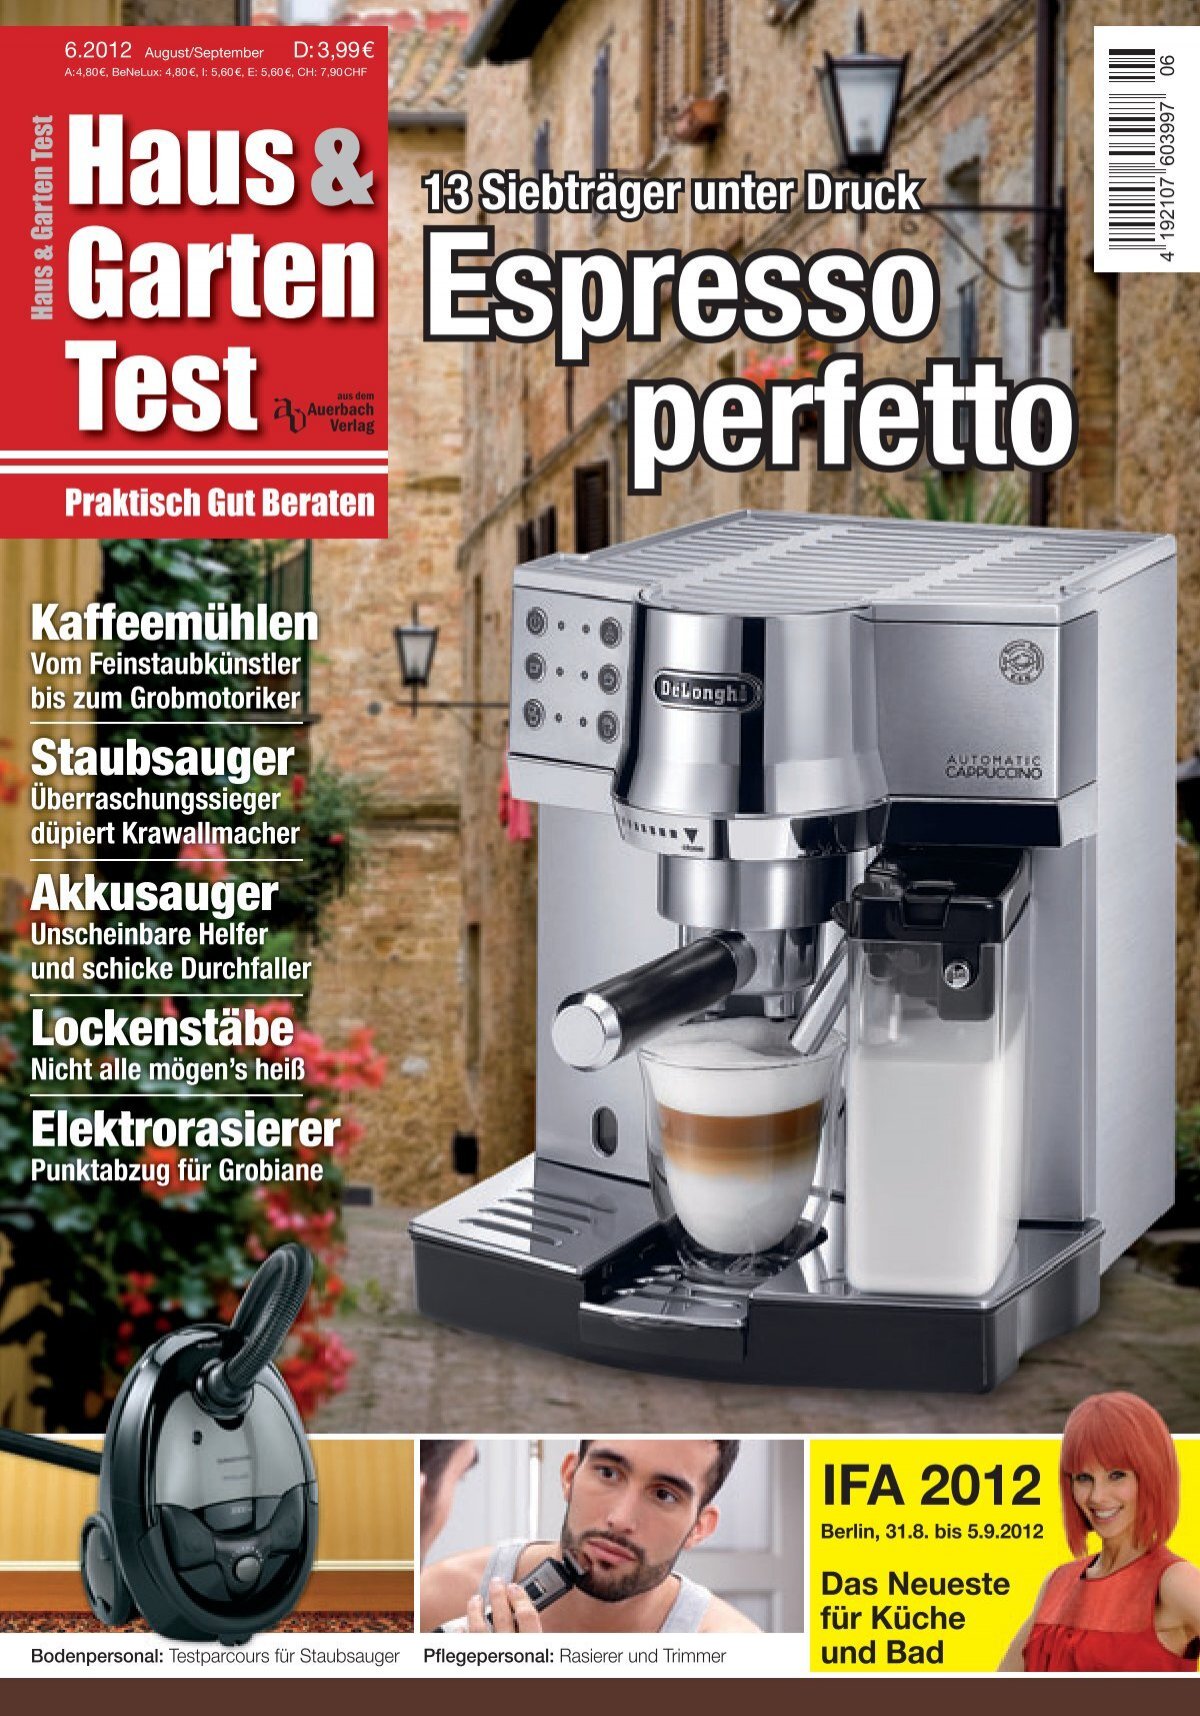 Haus & Garten Test Espresso perfetto (Vorschau)